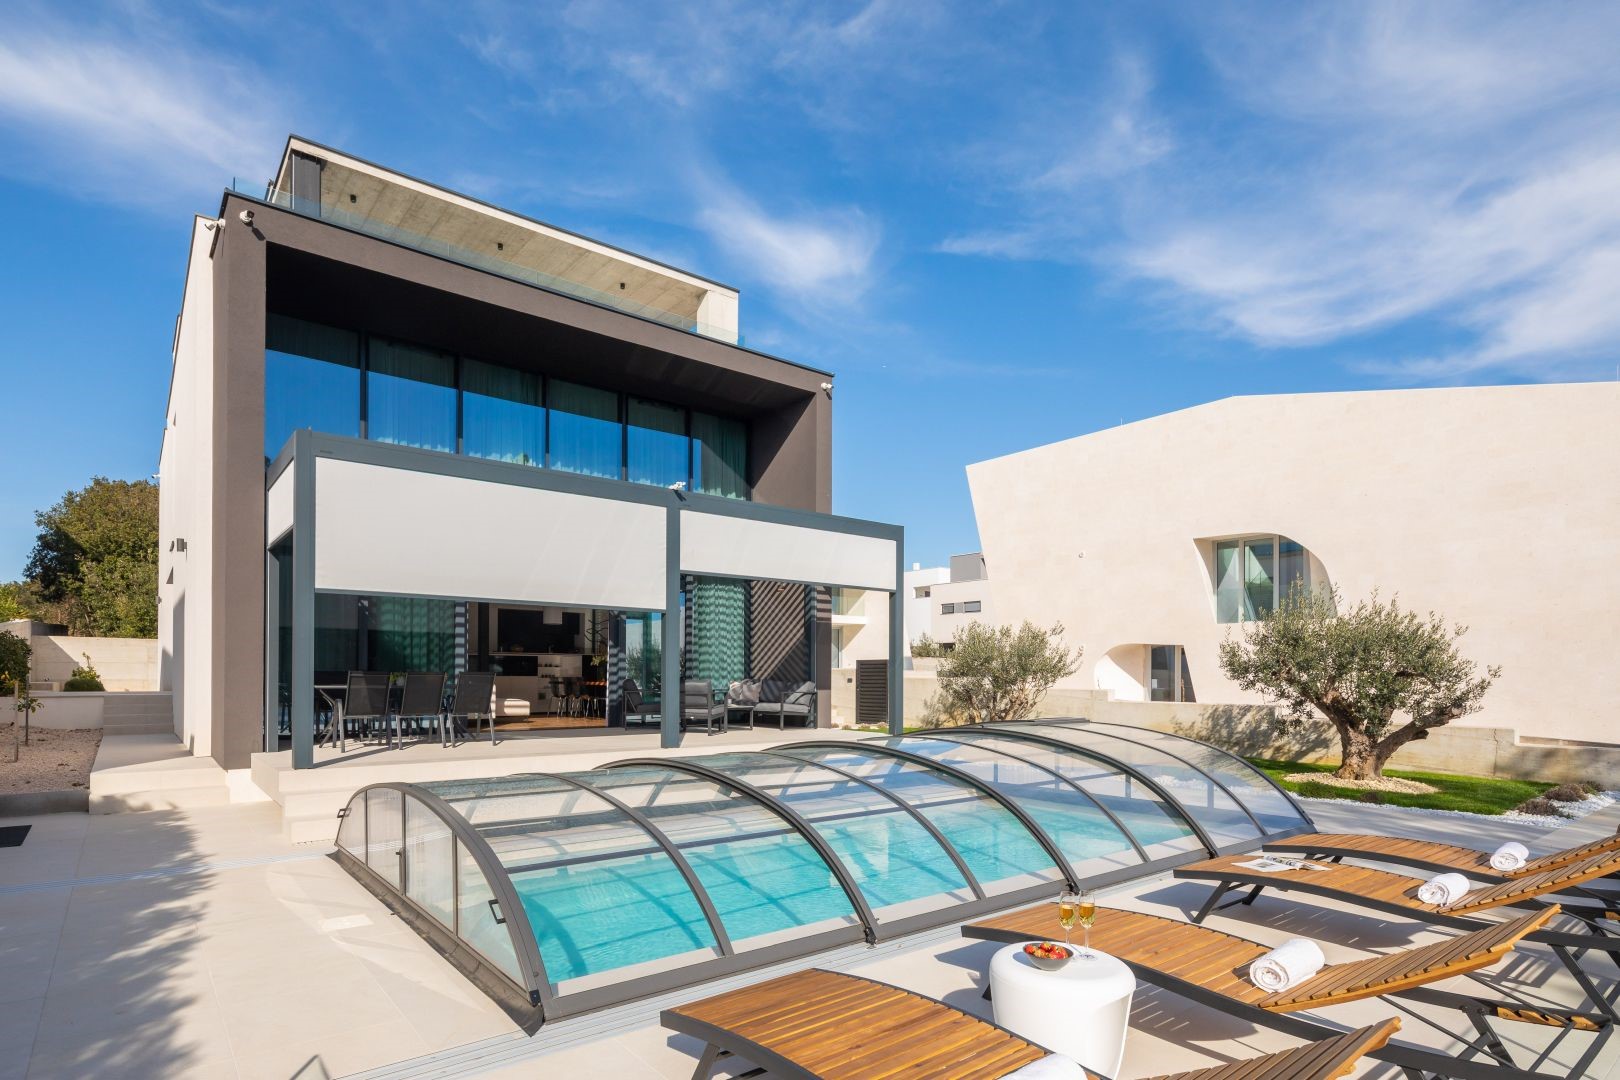 Vorderansicht der Luxusvilla Idria Sea and View mit privatem beheiztem und überdachtem Pool, Sonnendeck mit Liegestühlen und Terrasse mit elektronischem Pergola-System